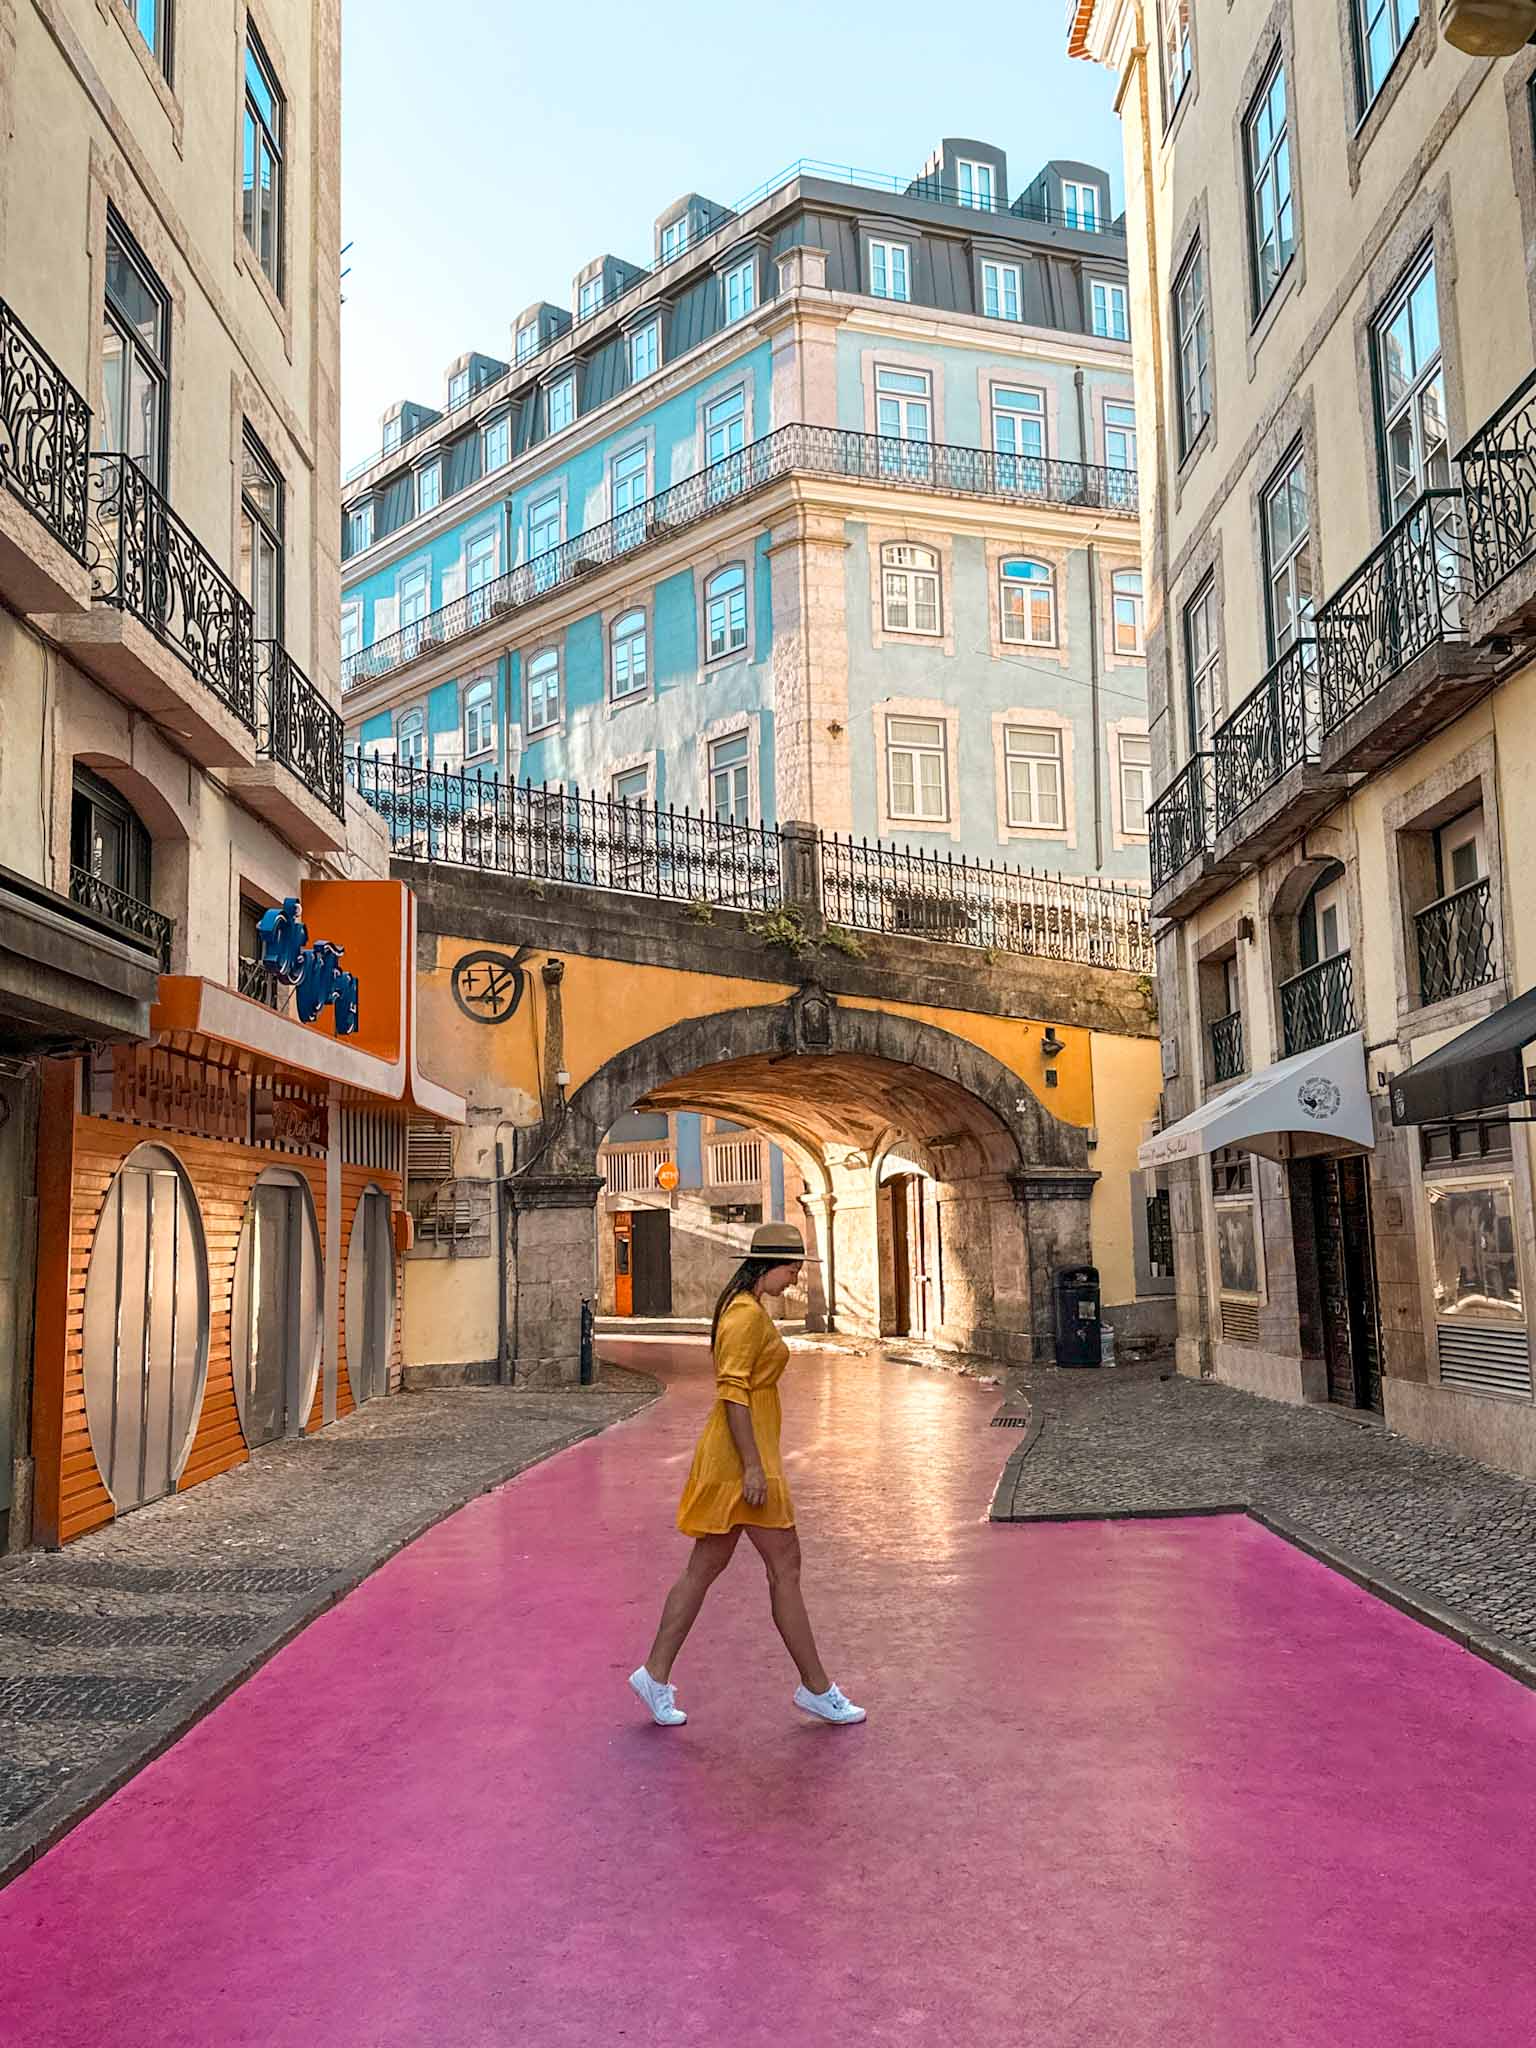 Best Instagram photo spots in Lisbon - Lisbon Pink Street